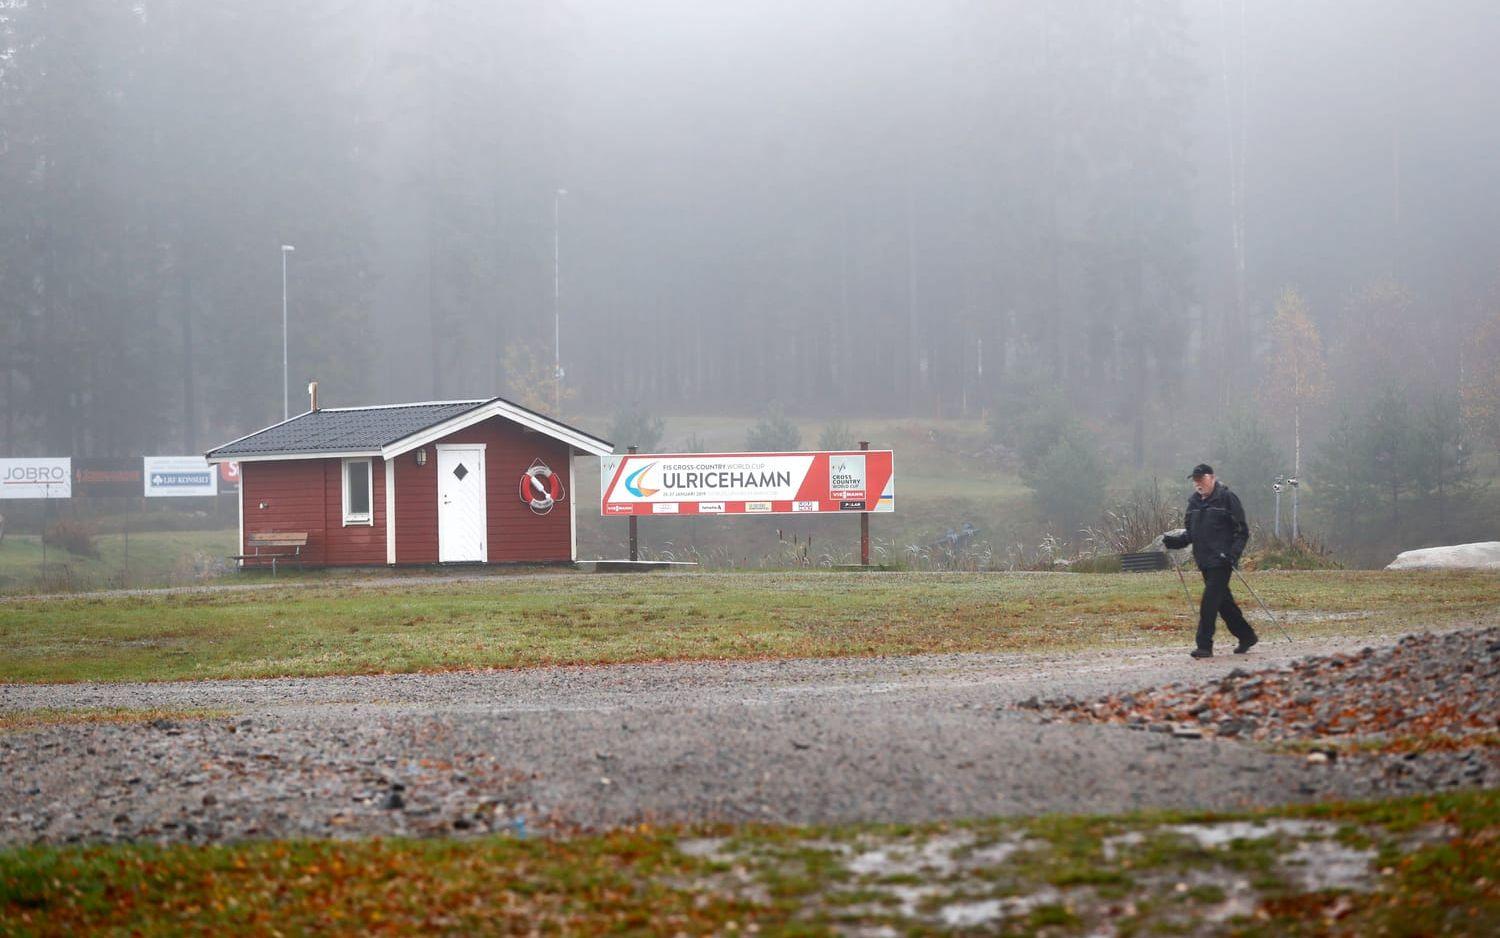 Mordet inträffade i närheten av skidstation i Ulricehamn. Området bevakades tiden efter mordet av polis för att trygga allmänheten. Foto: TT